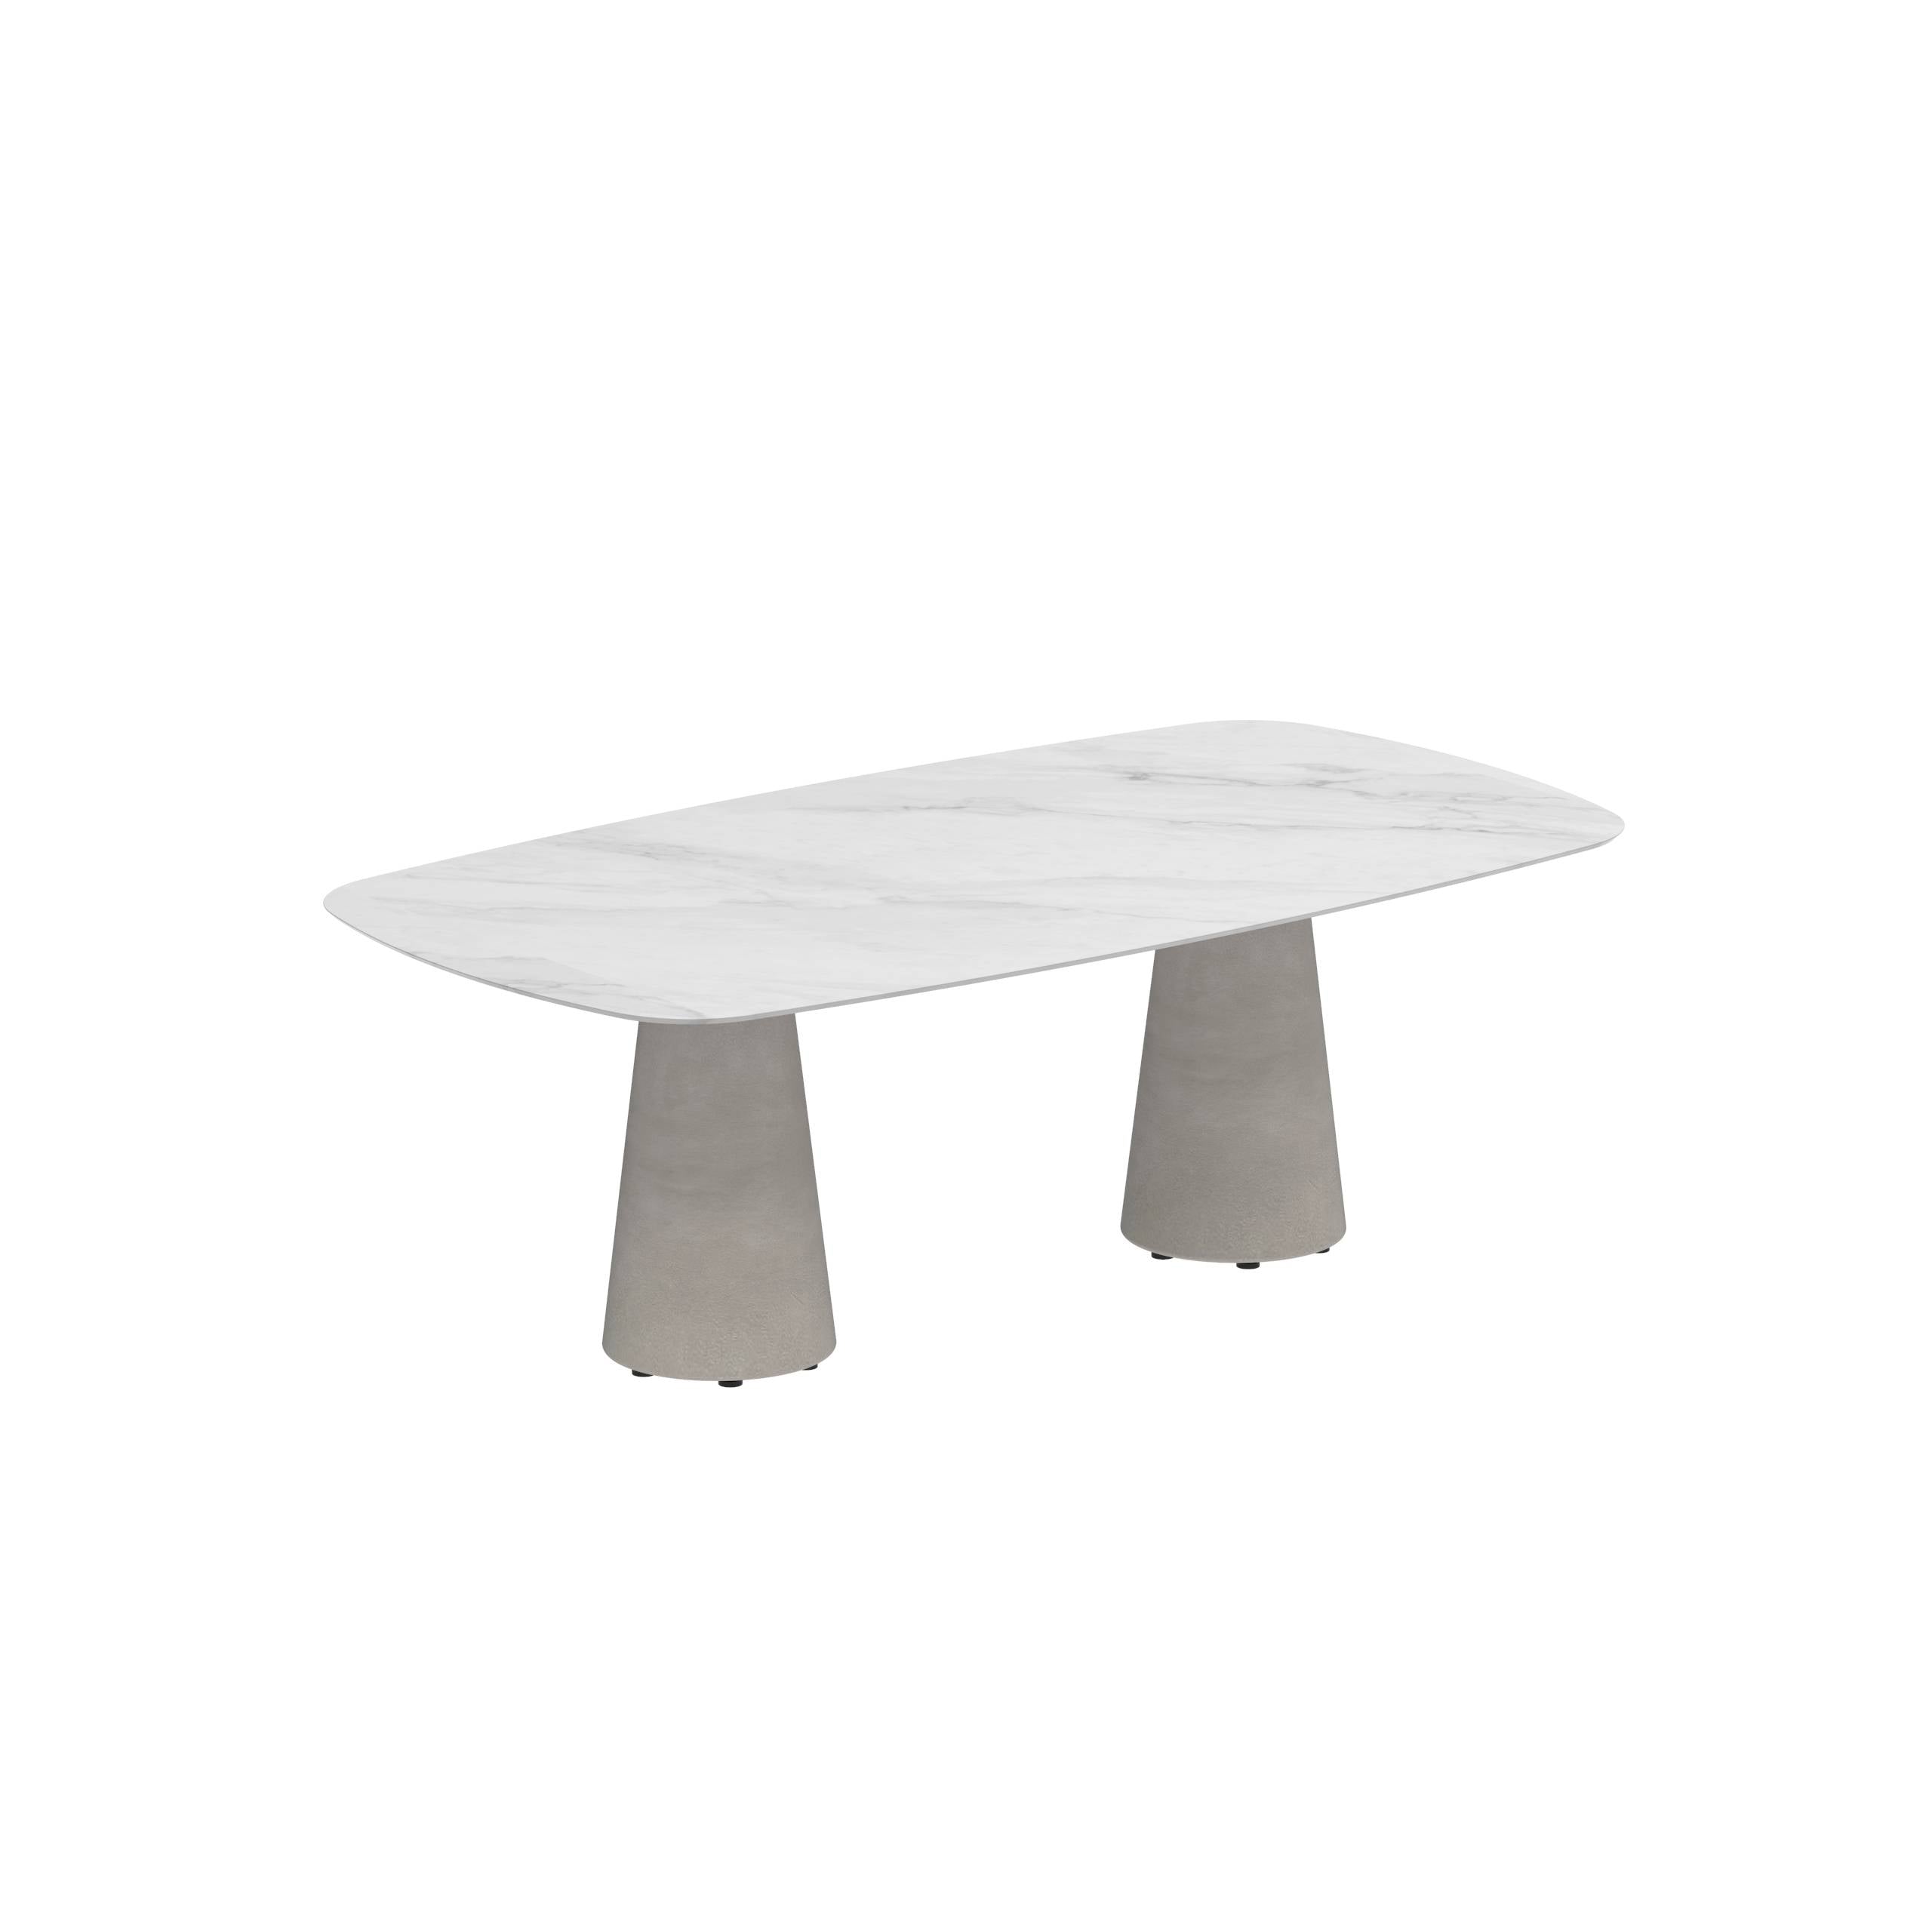 Conix Table 220x120 Cm Legs Concrete Cement Grey - Table Top Ceramic Bianco Statuario